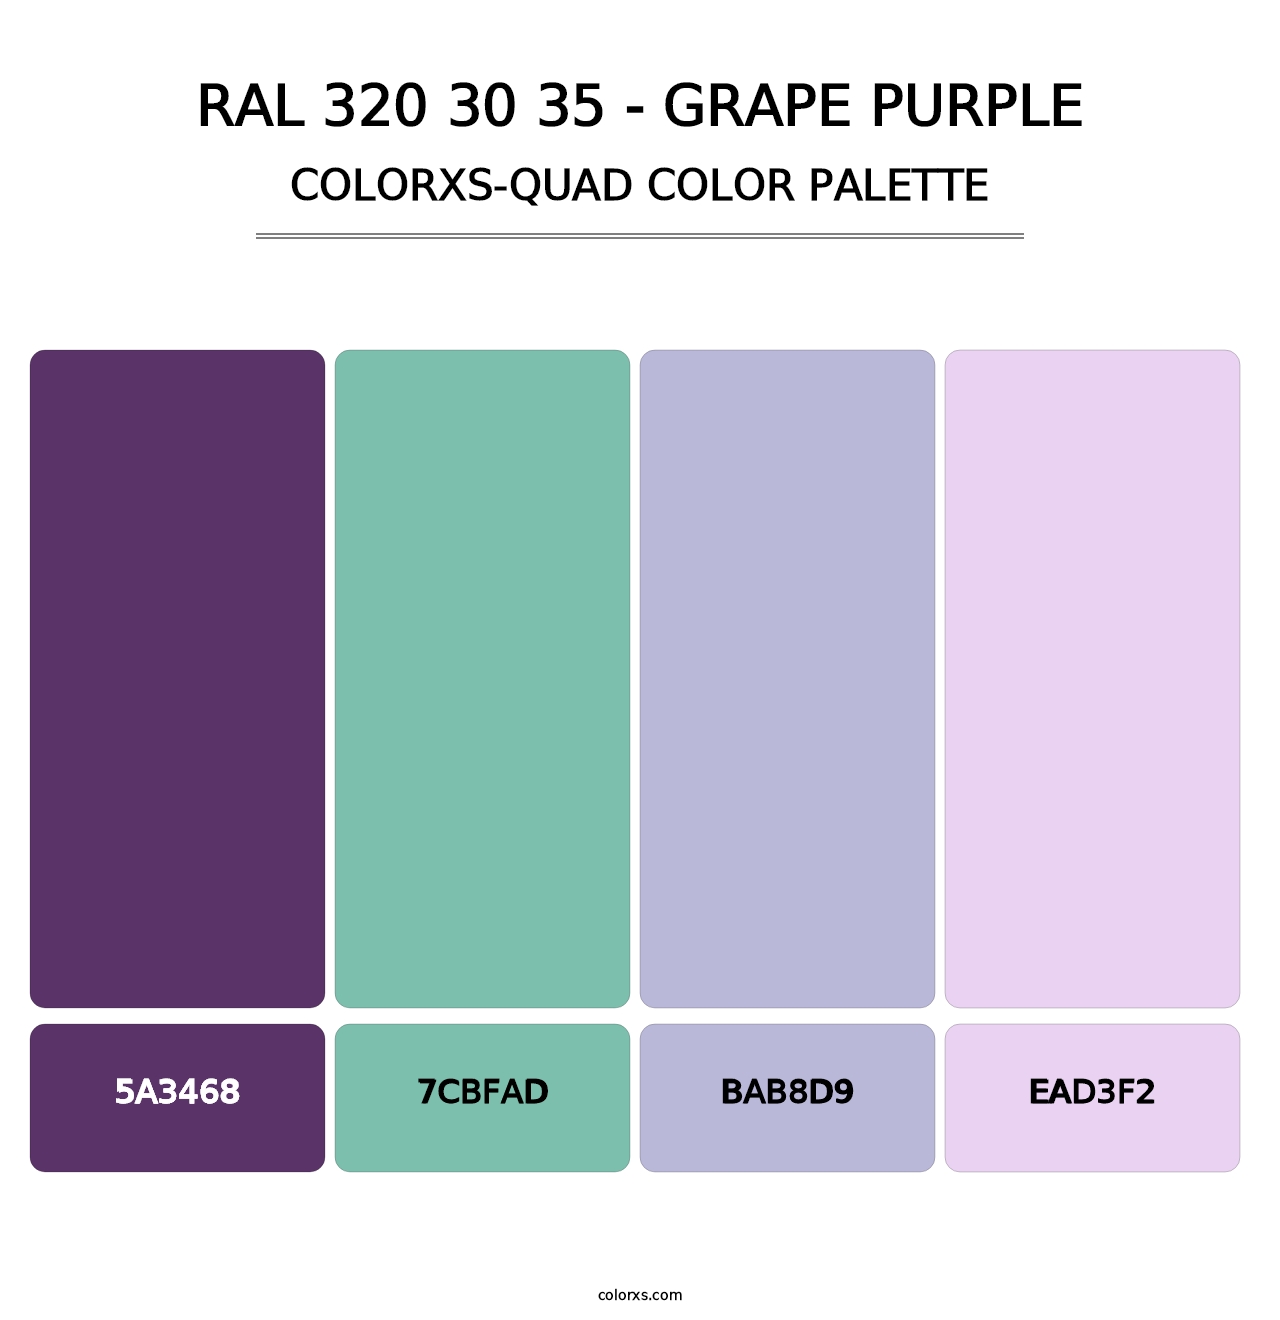 RAL 320 30 35 - Grape Purple - Colorxs Quad Palette